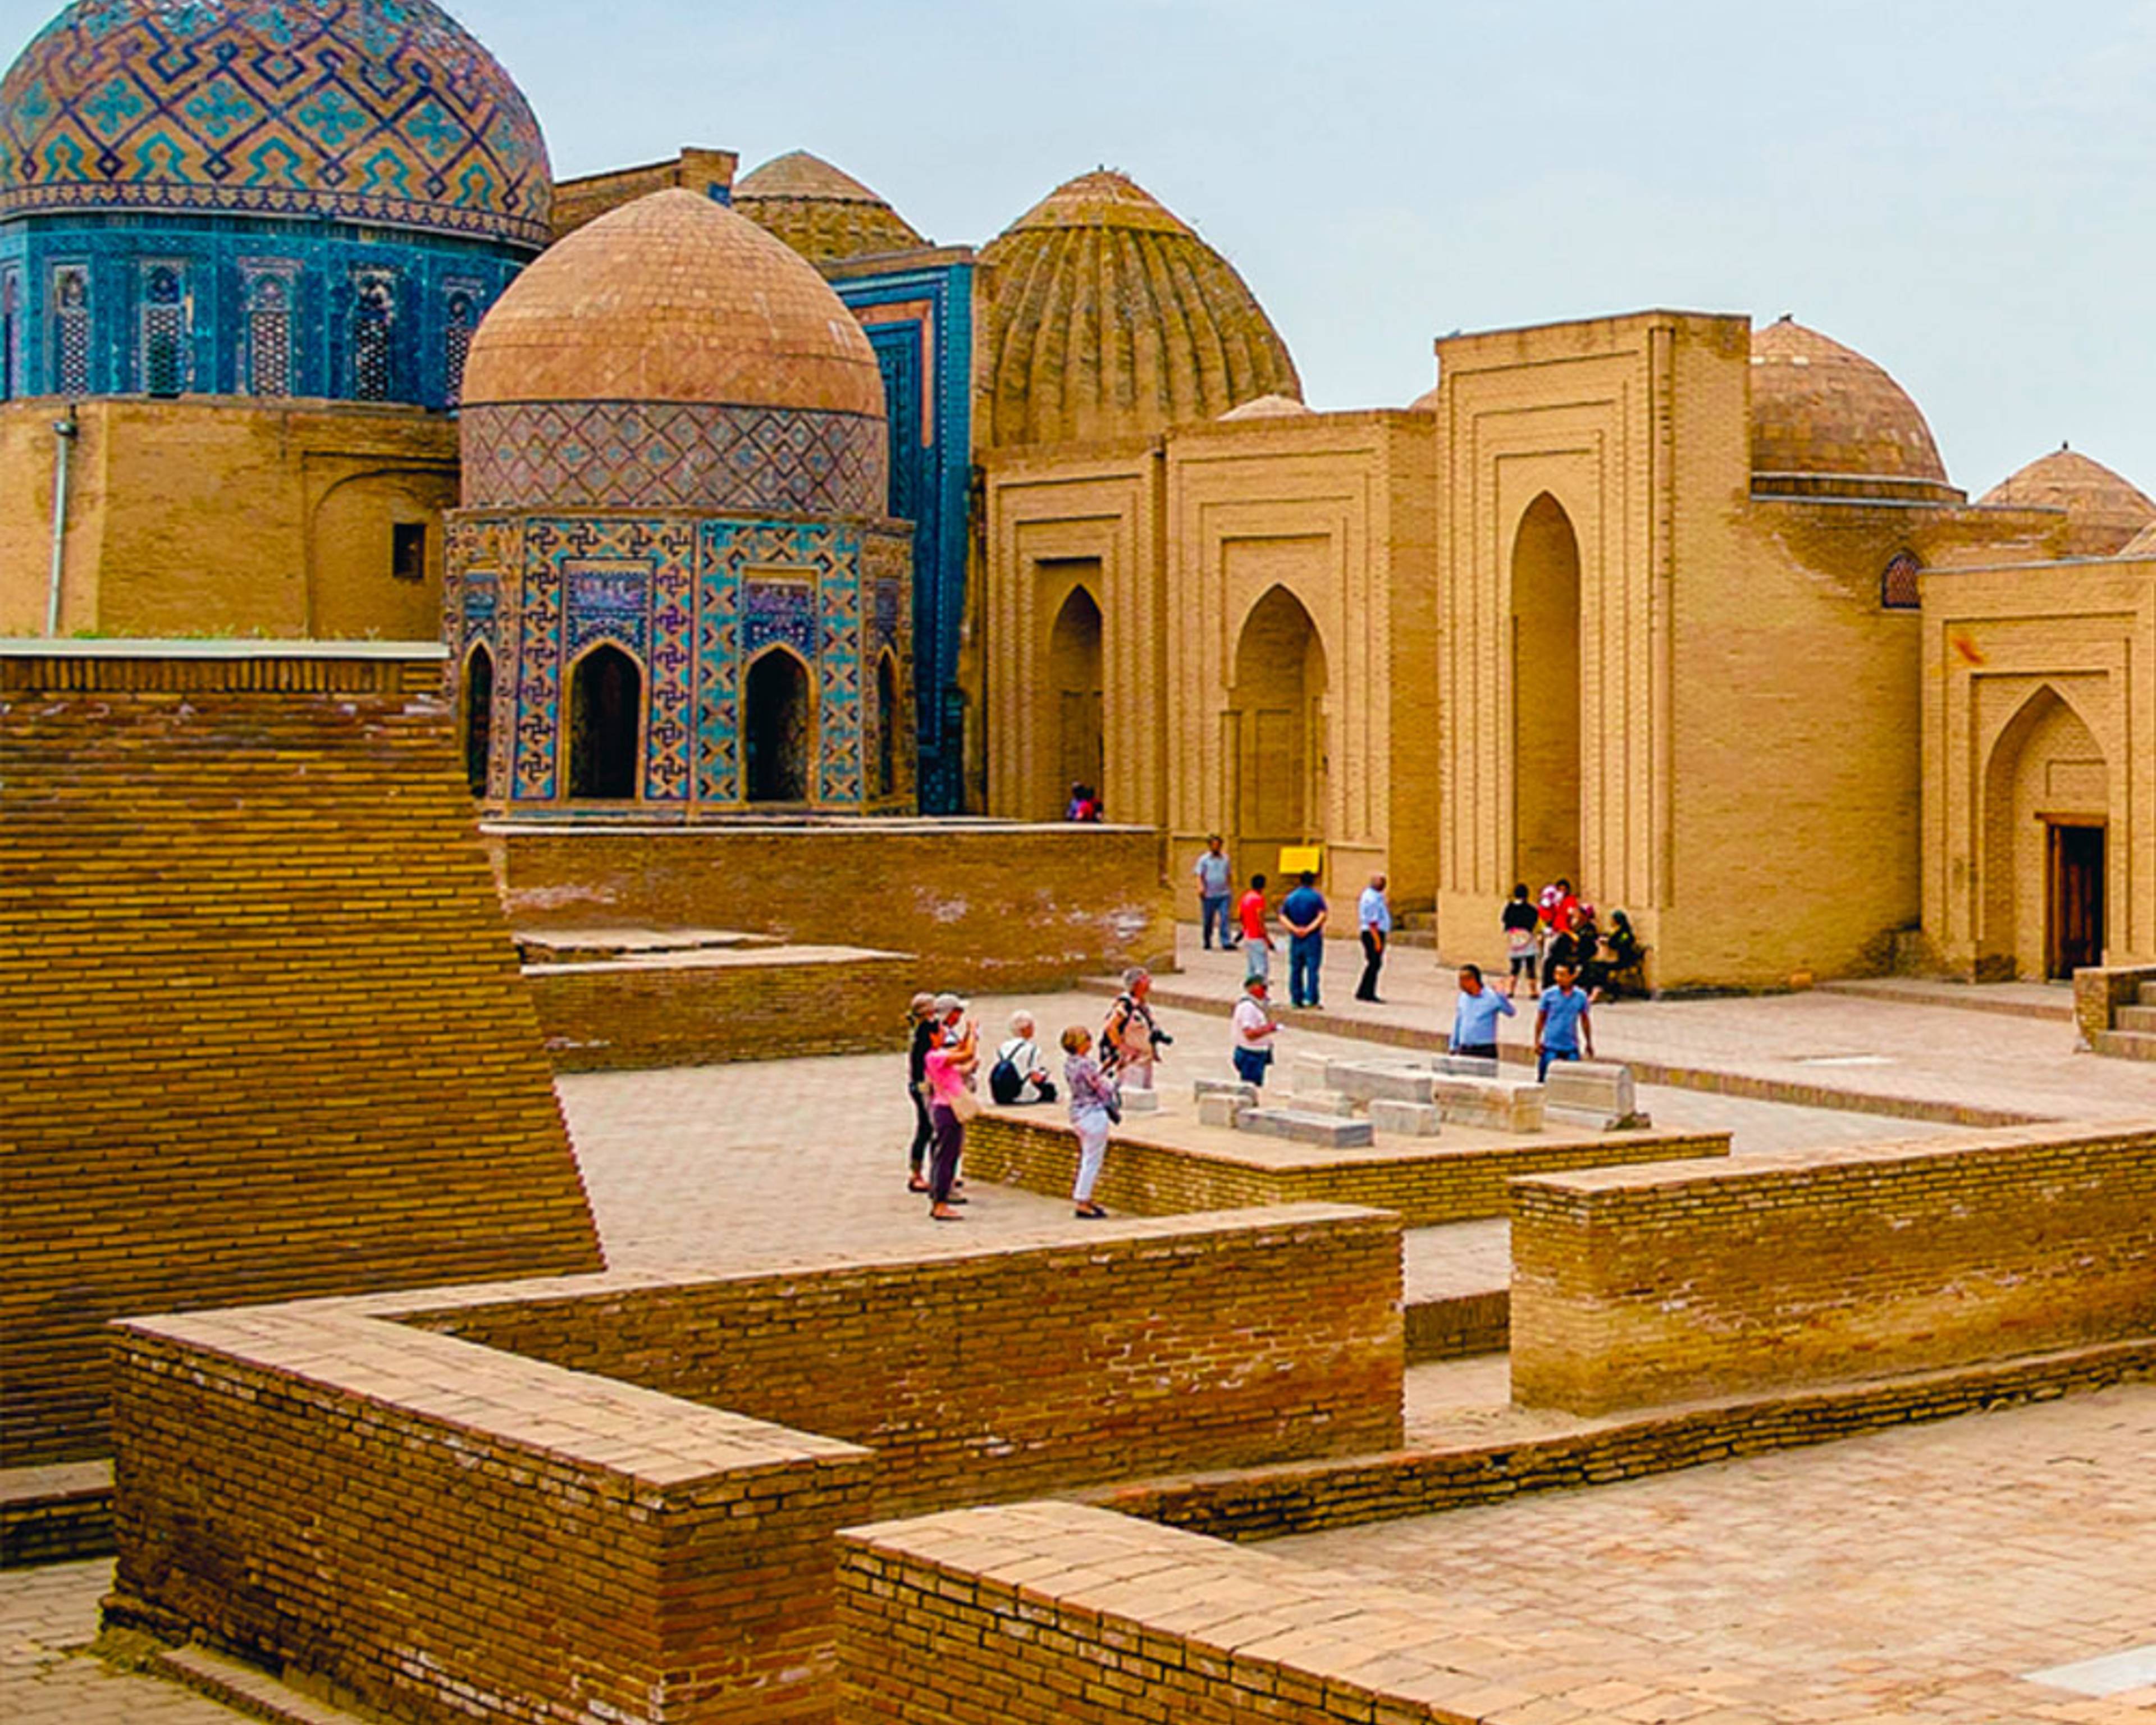 Rejoignez un groupe pour un voyage en Ouzbékistan inoubliable